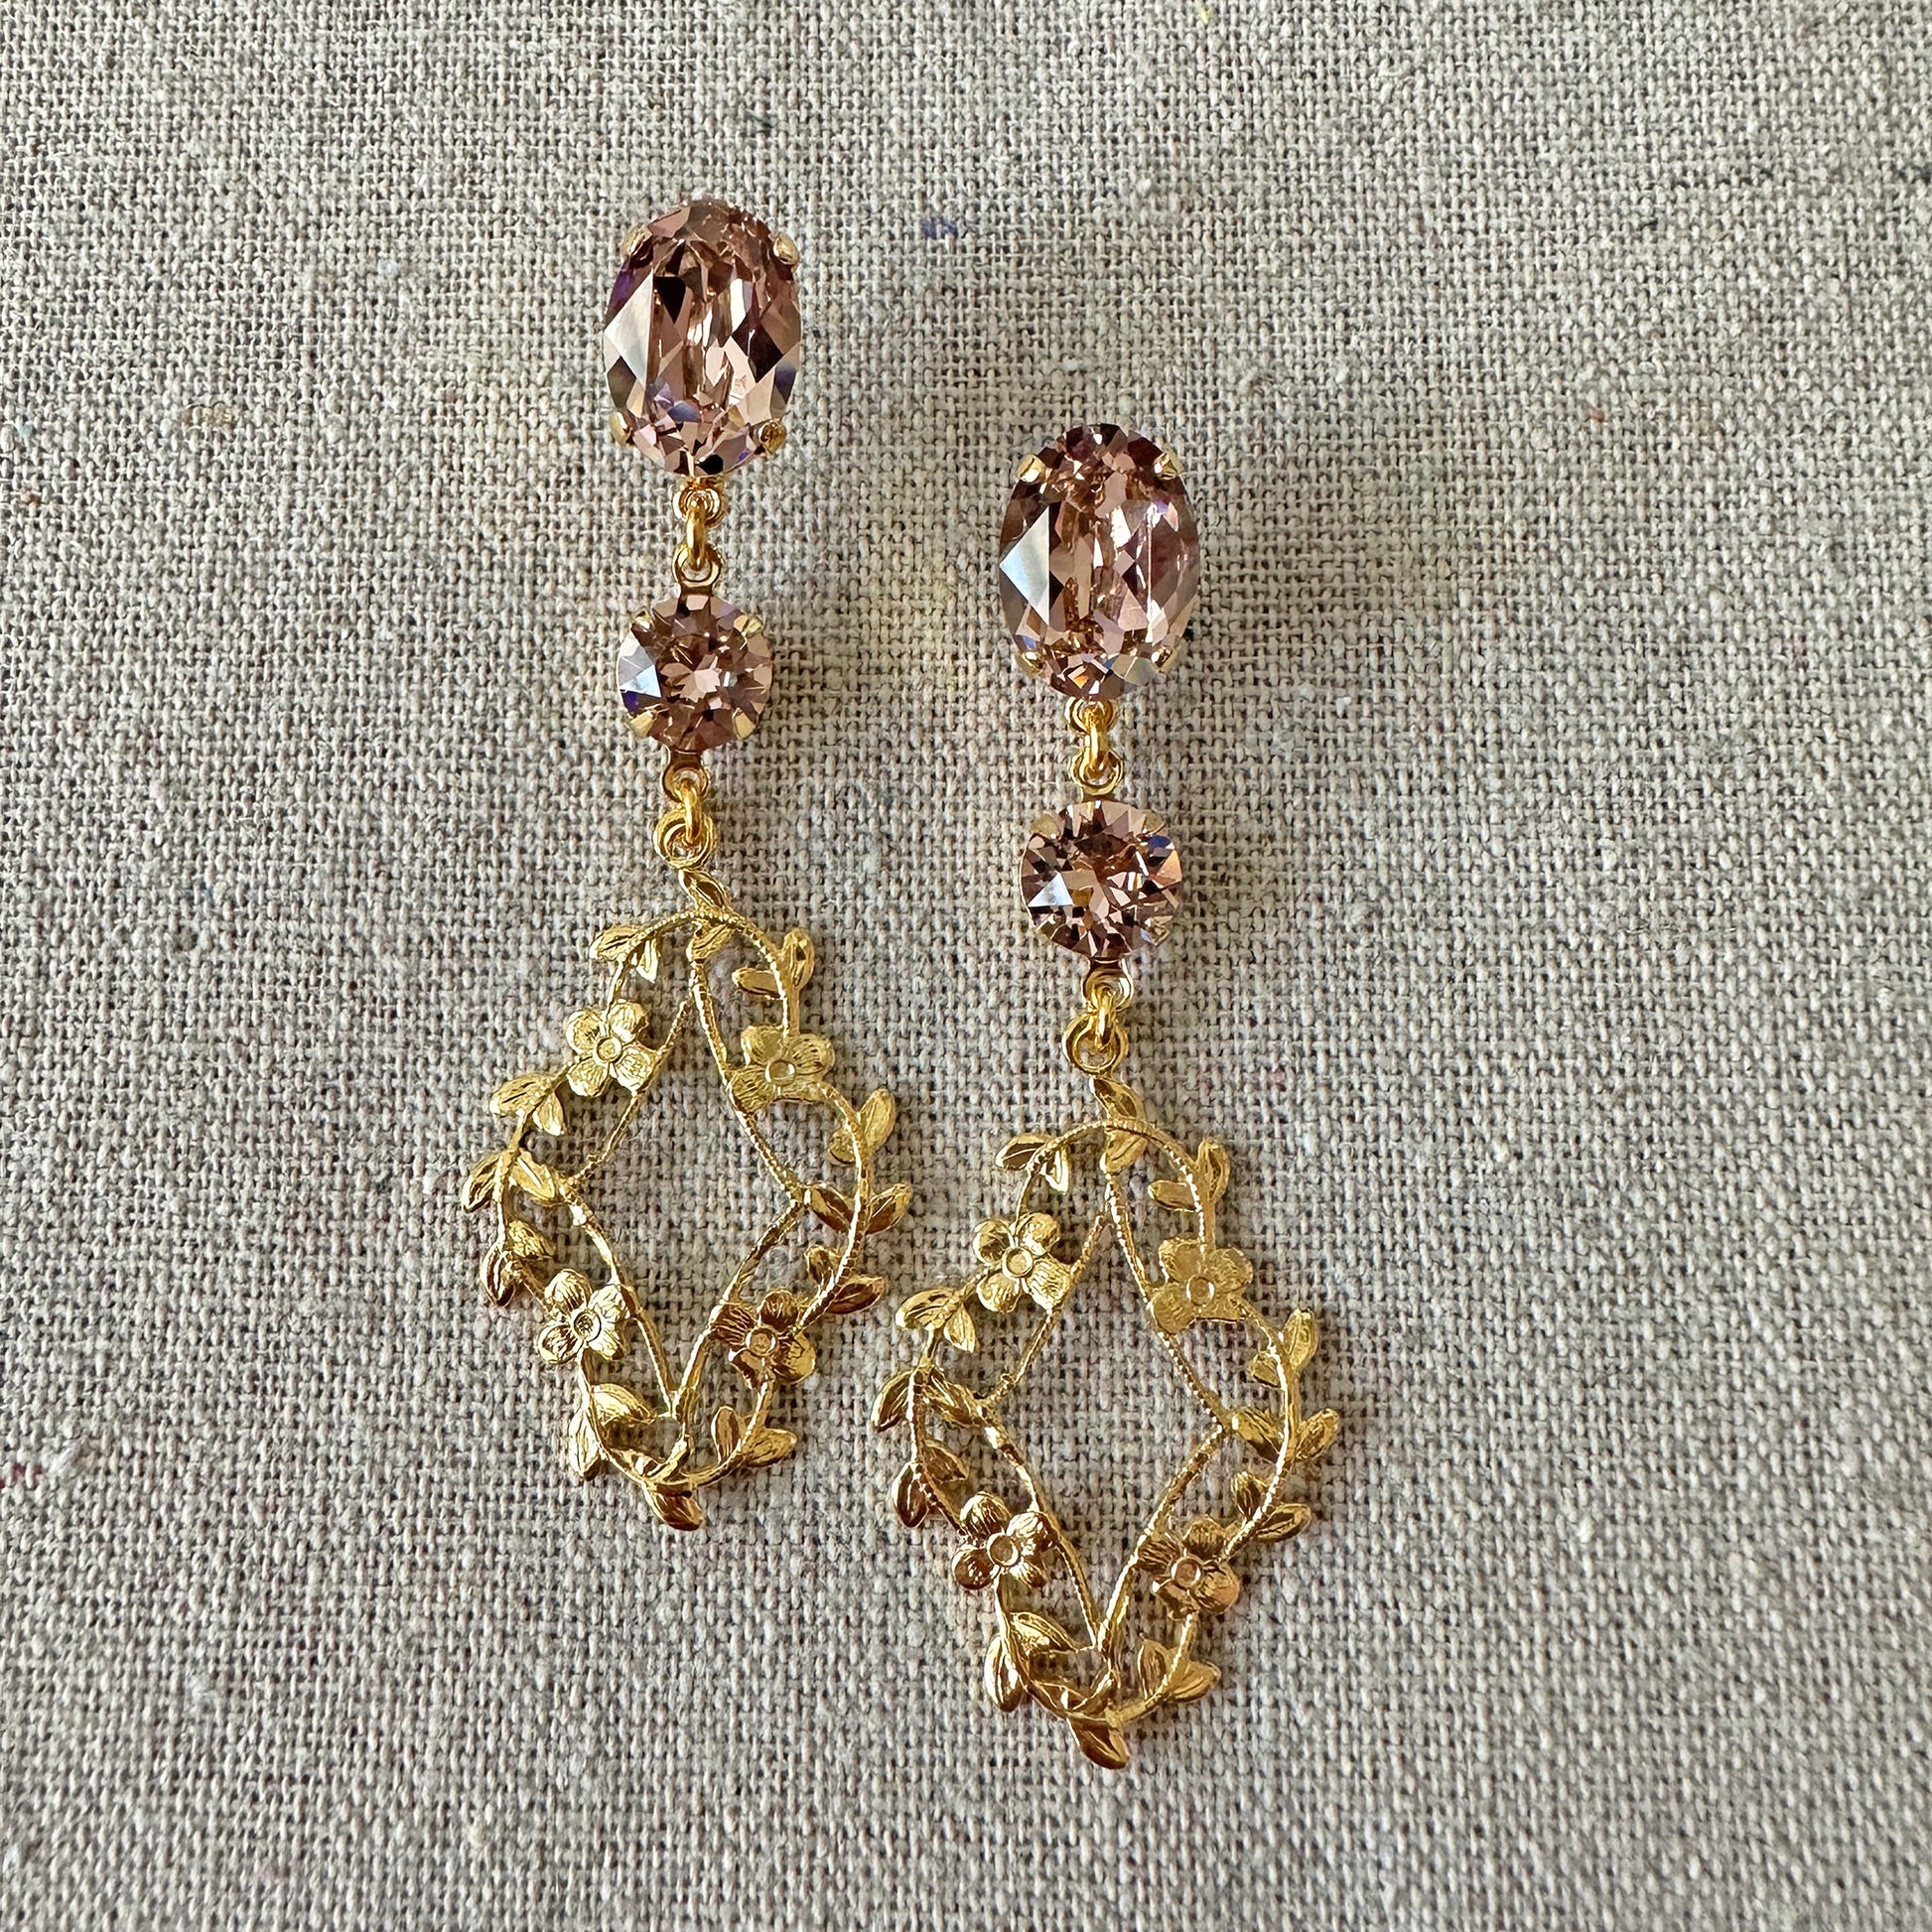 blooming earrings gold